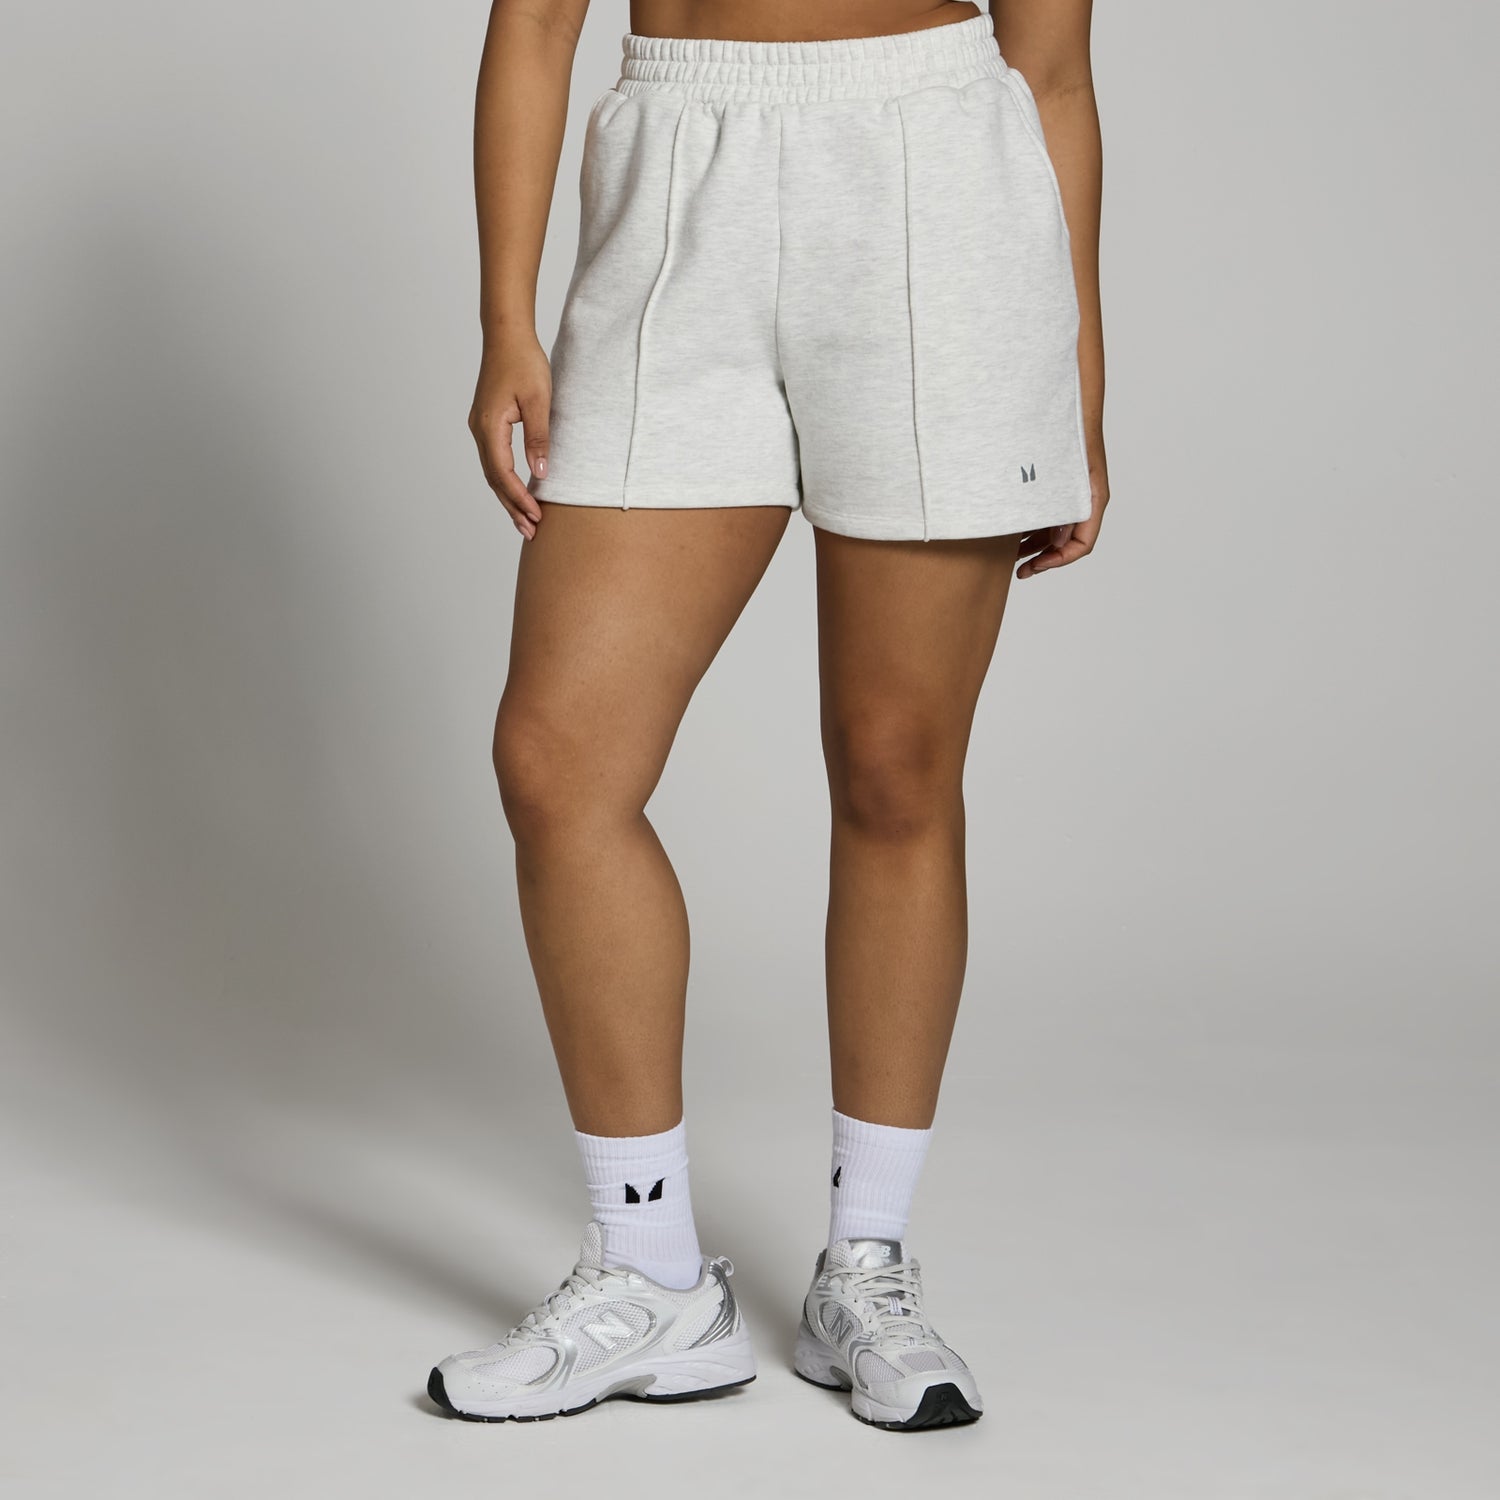 Женские спортивные шорты MP Lifestyle из плотной ткани — светло-серый цвет  - XS